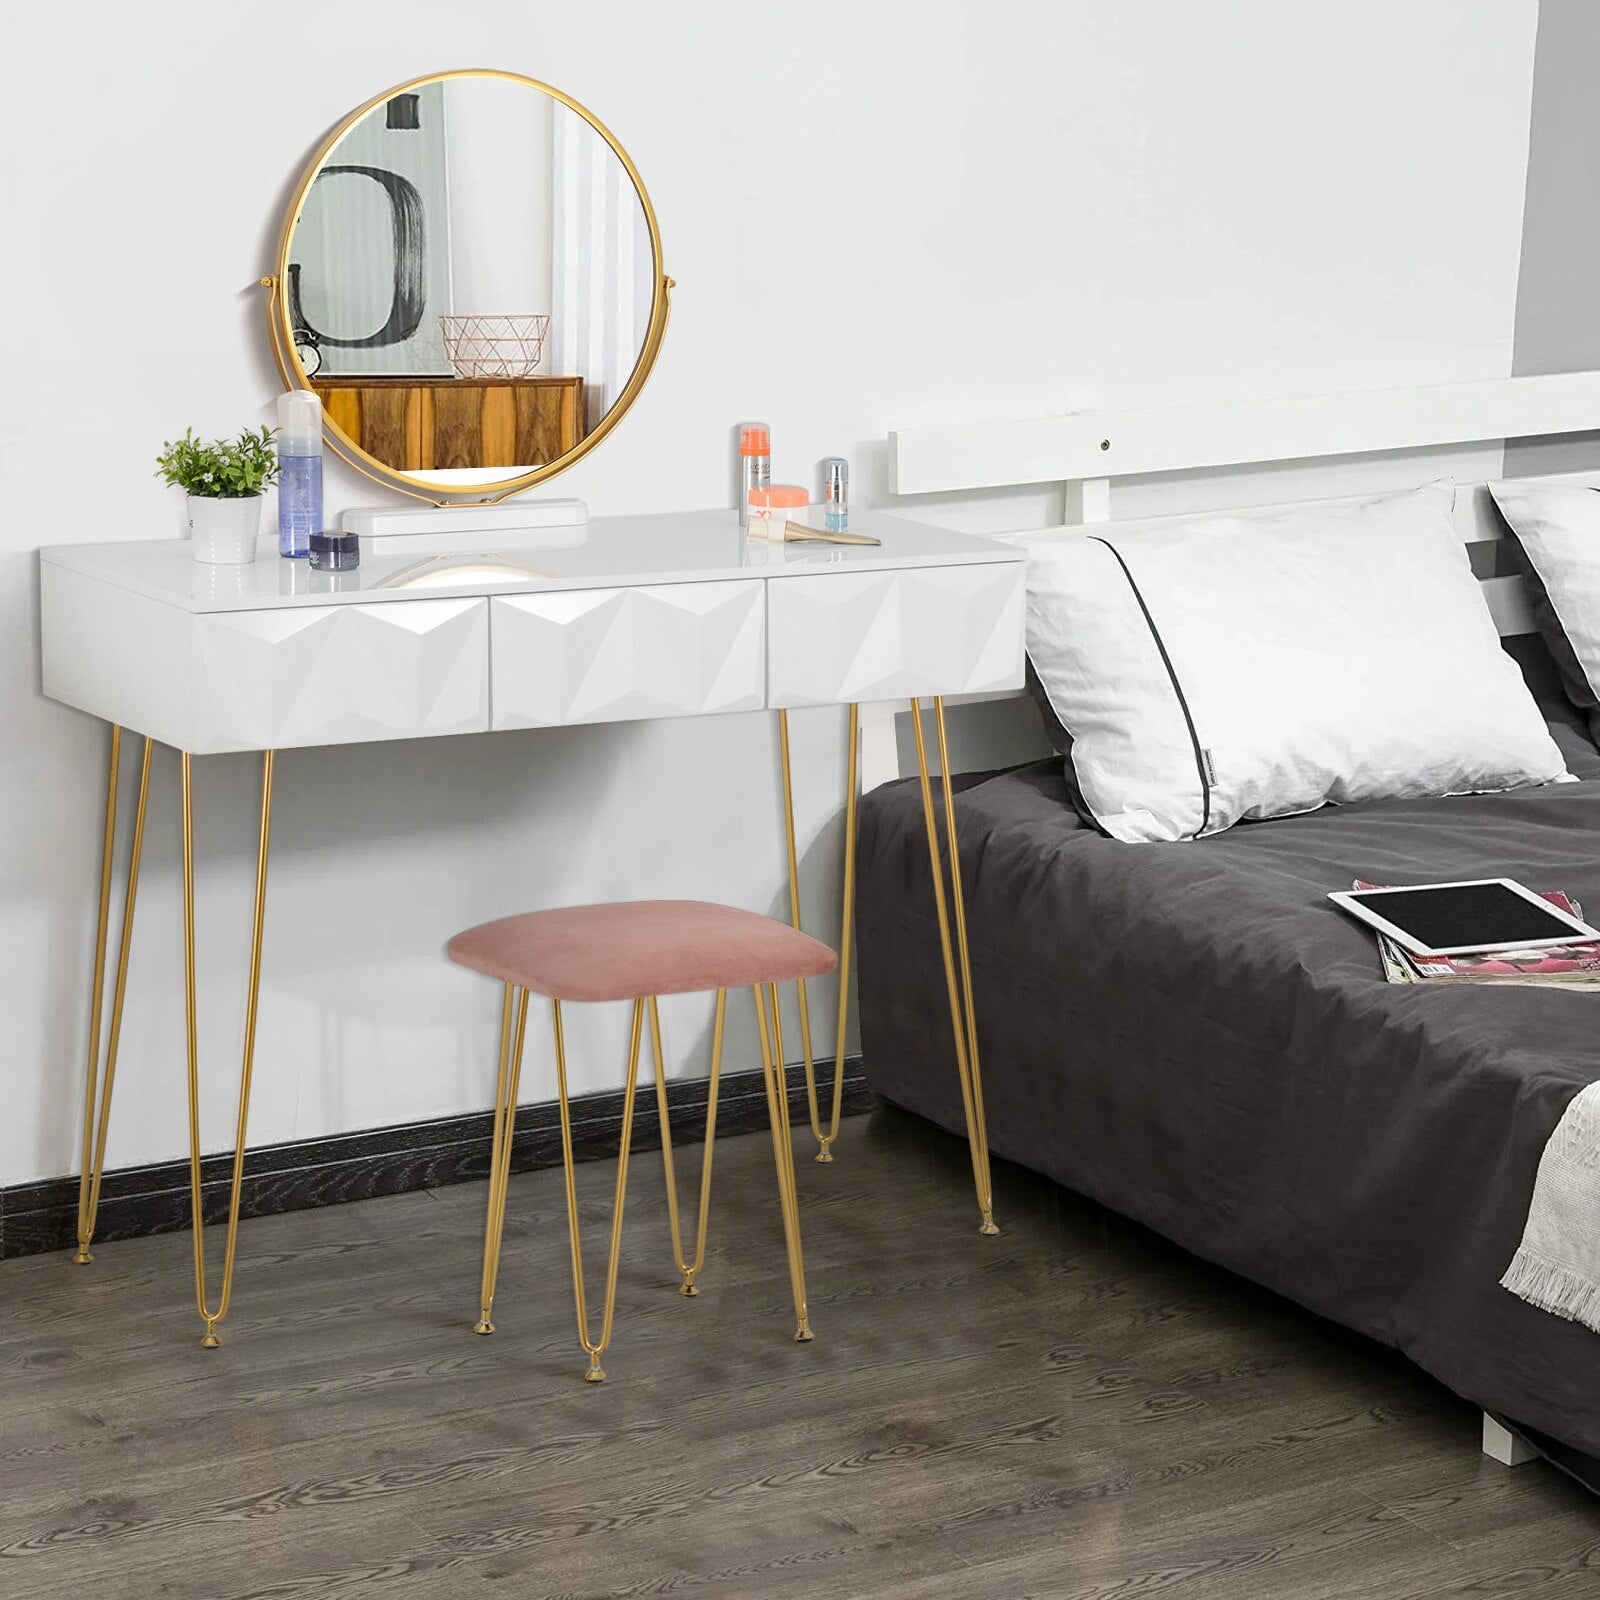 Schminktisch mit 360° drehbarem Spiegel, samtbezogenem Hocker, Make-up-Kosmetiktisch mit 3 Schubladen und 3D-Effekt für das Schlafzimmer weiß gold - Unique Outlet